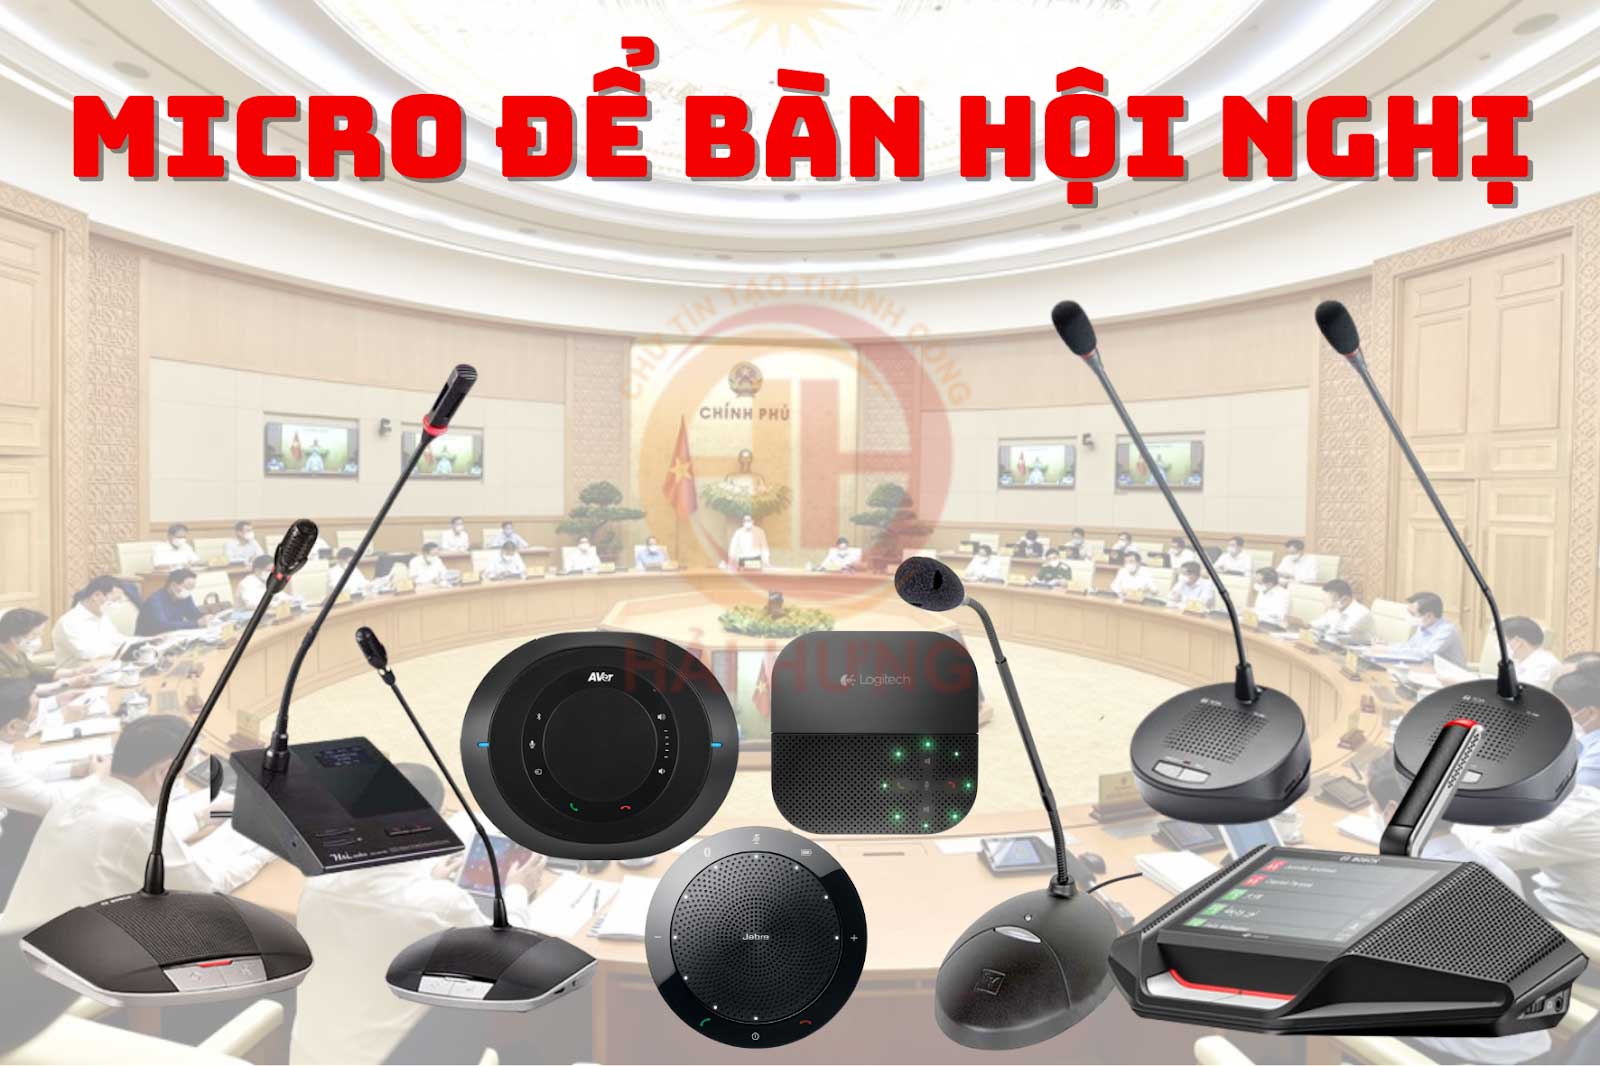 Micro để bàn hội nghị là thiết bị thu âm chuyên dụng dùng cho phòng họp, hội nghị, hội thảo